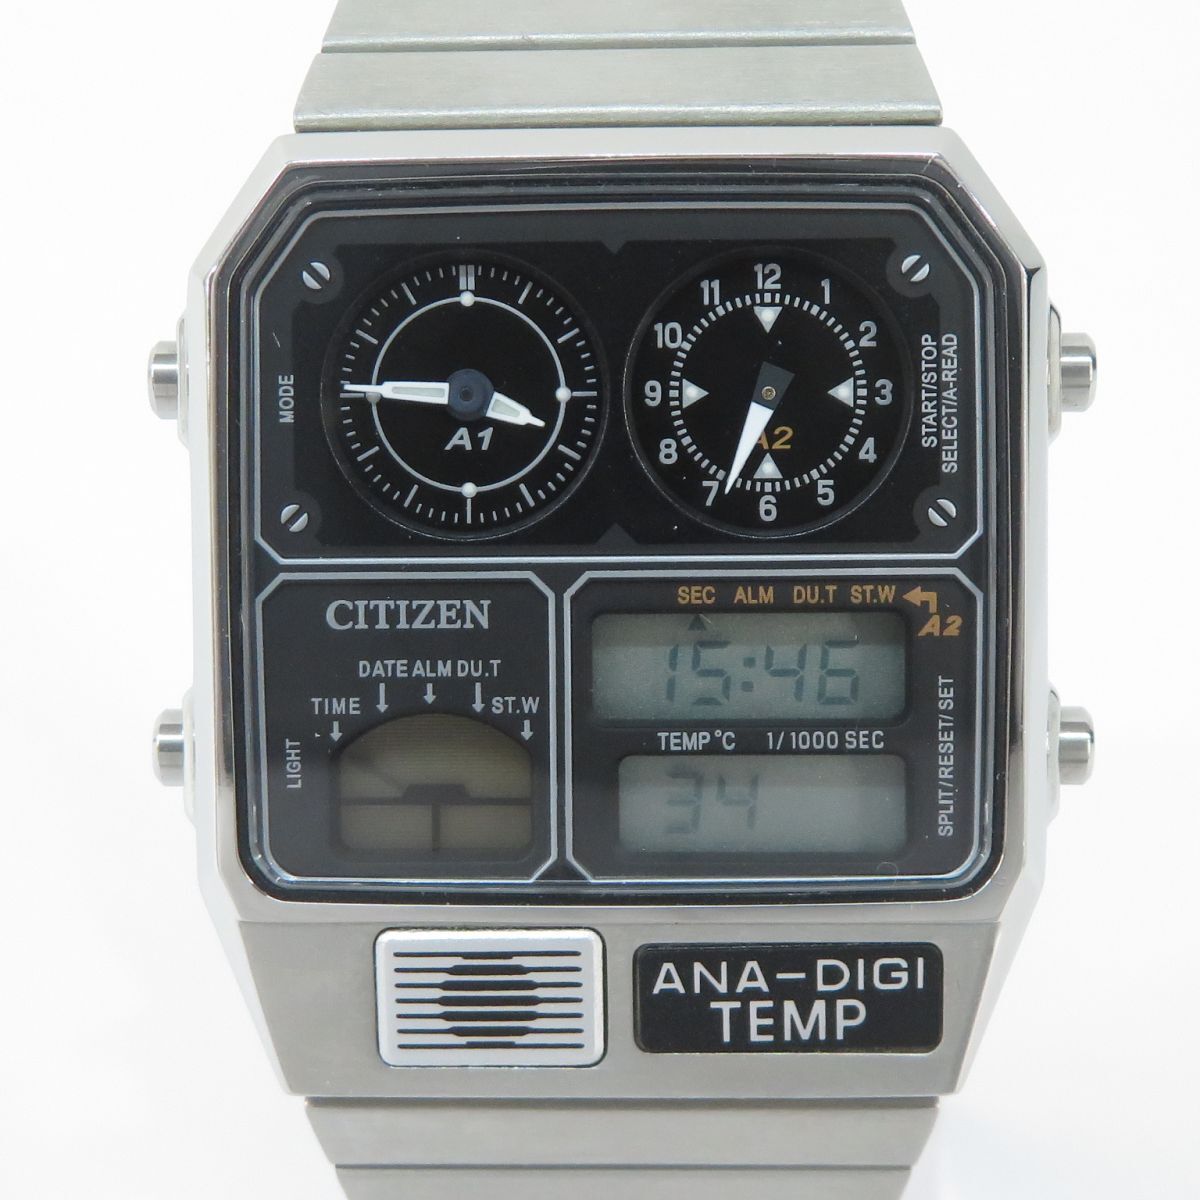 158s CITIZEN シチズン ANA-DIGI TEMP アナデジテンプ 復刻モデル JG2101-78E 8989-S116864 クォーツ 腕時計 ※中古の画像1